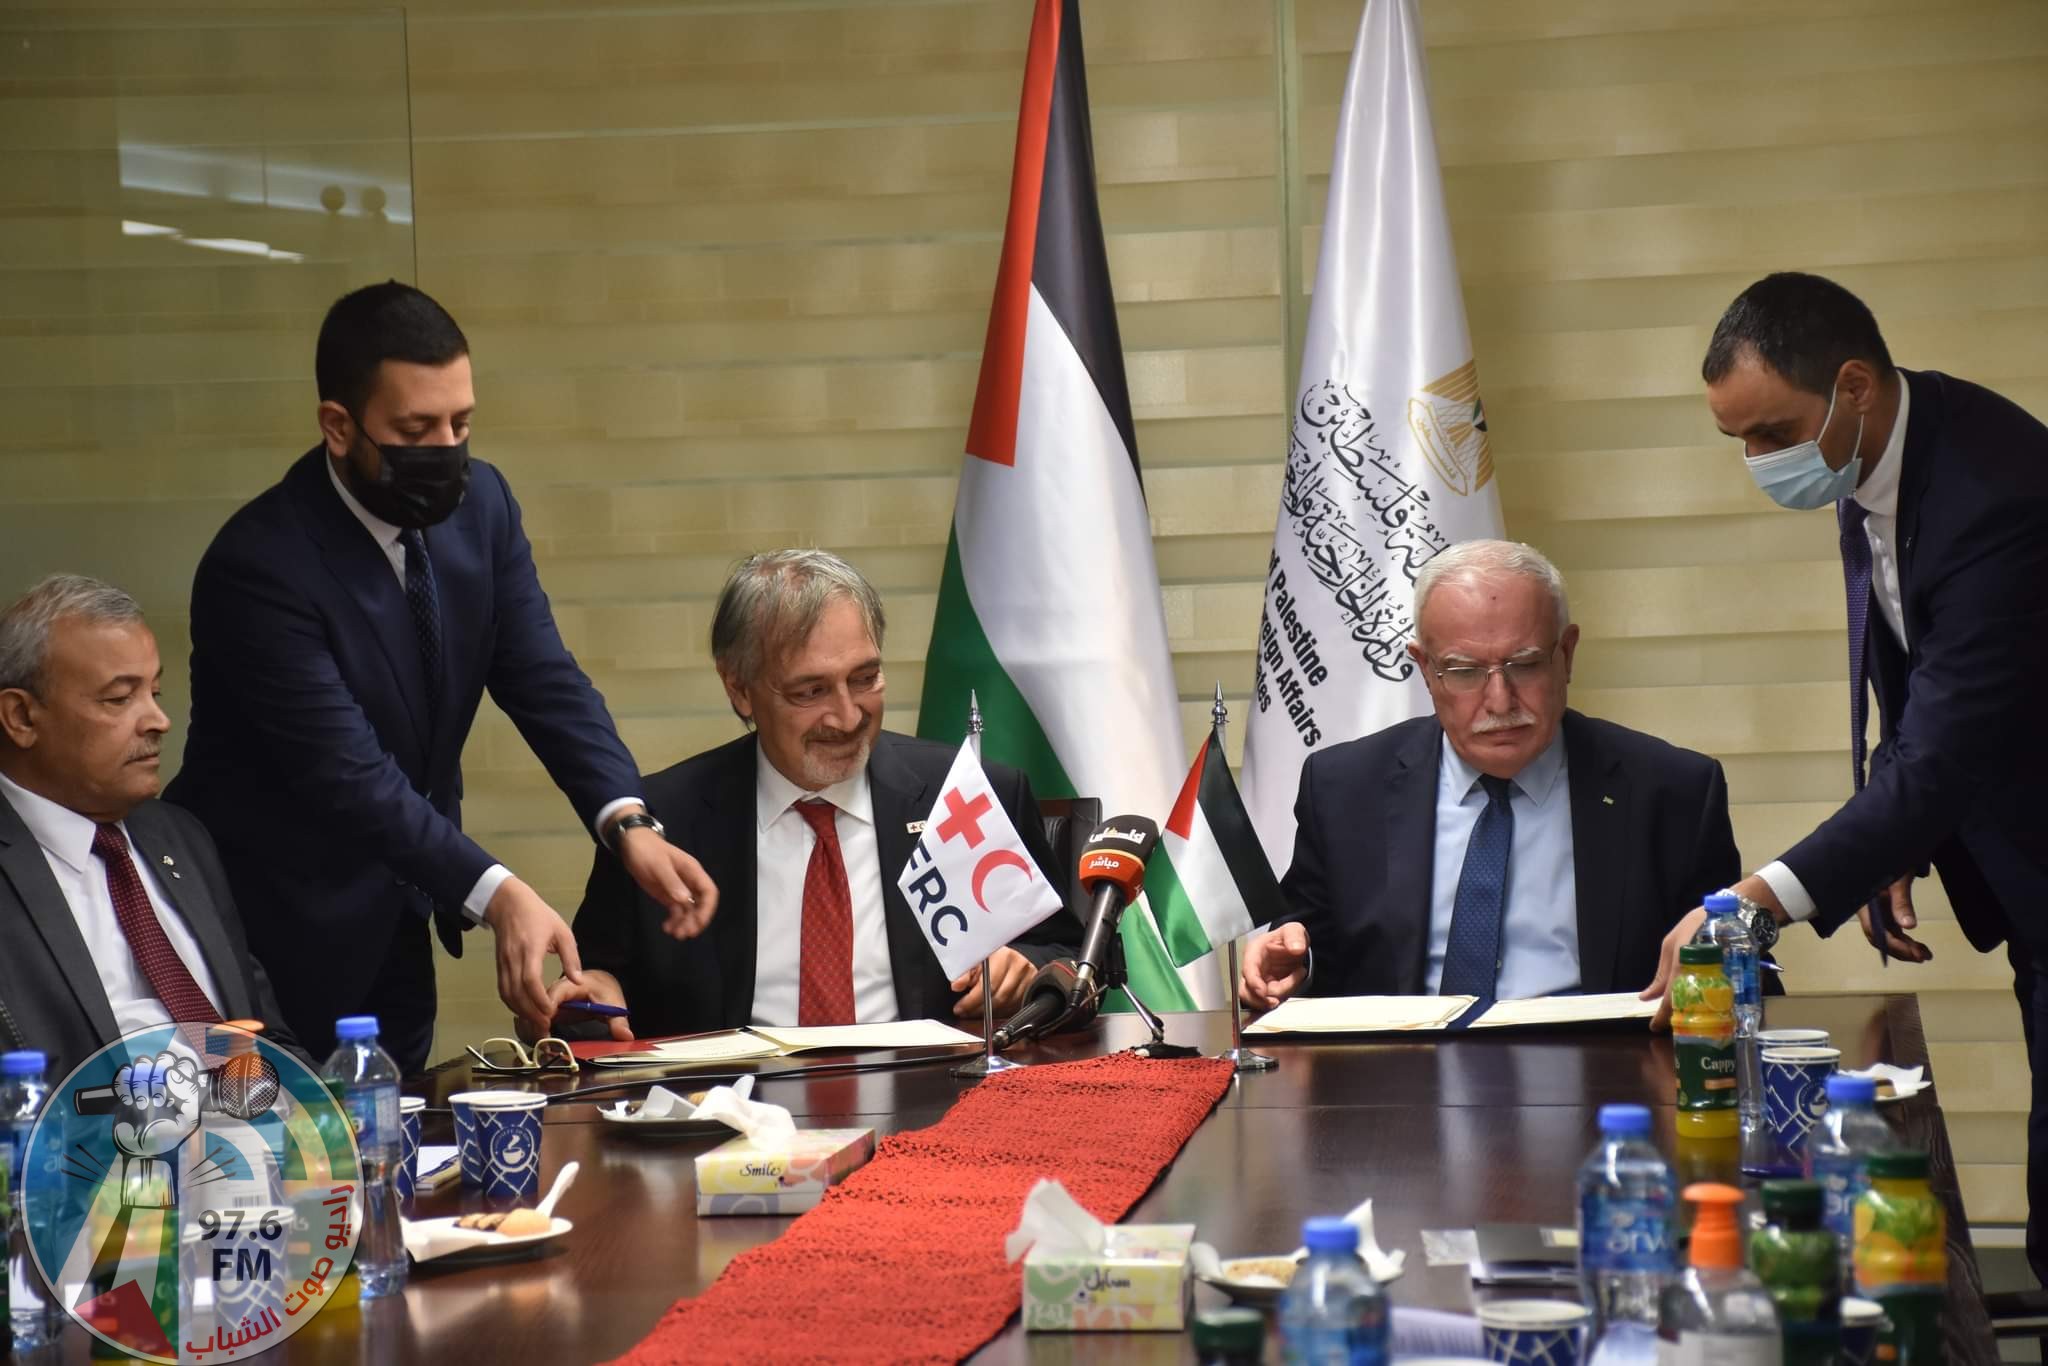 المالكي يوقع اتفاقية لفتح فرع للاتحاد الدولي لجمعيات الصليب والهلال الأحمر في فلسطين